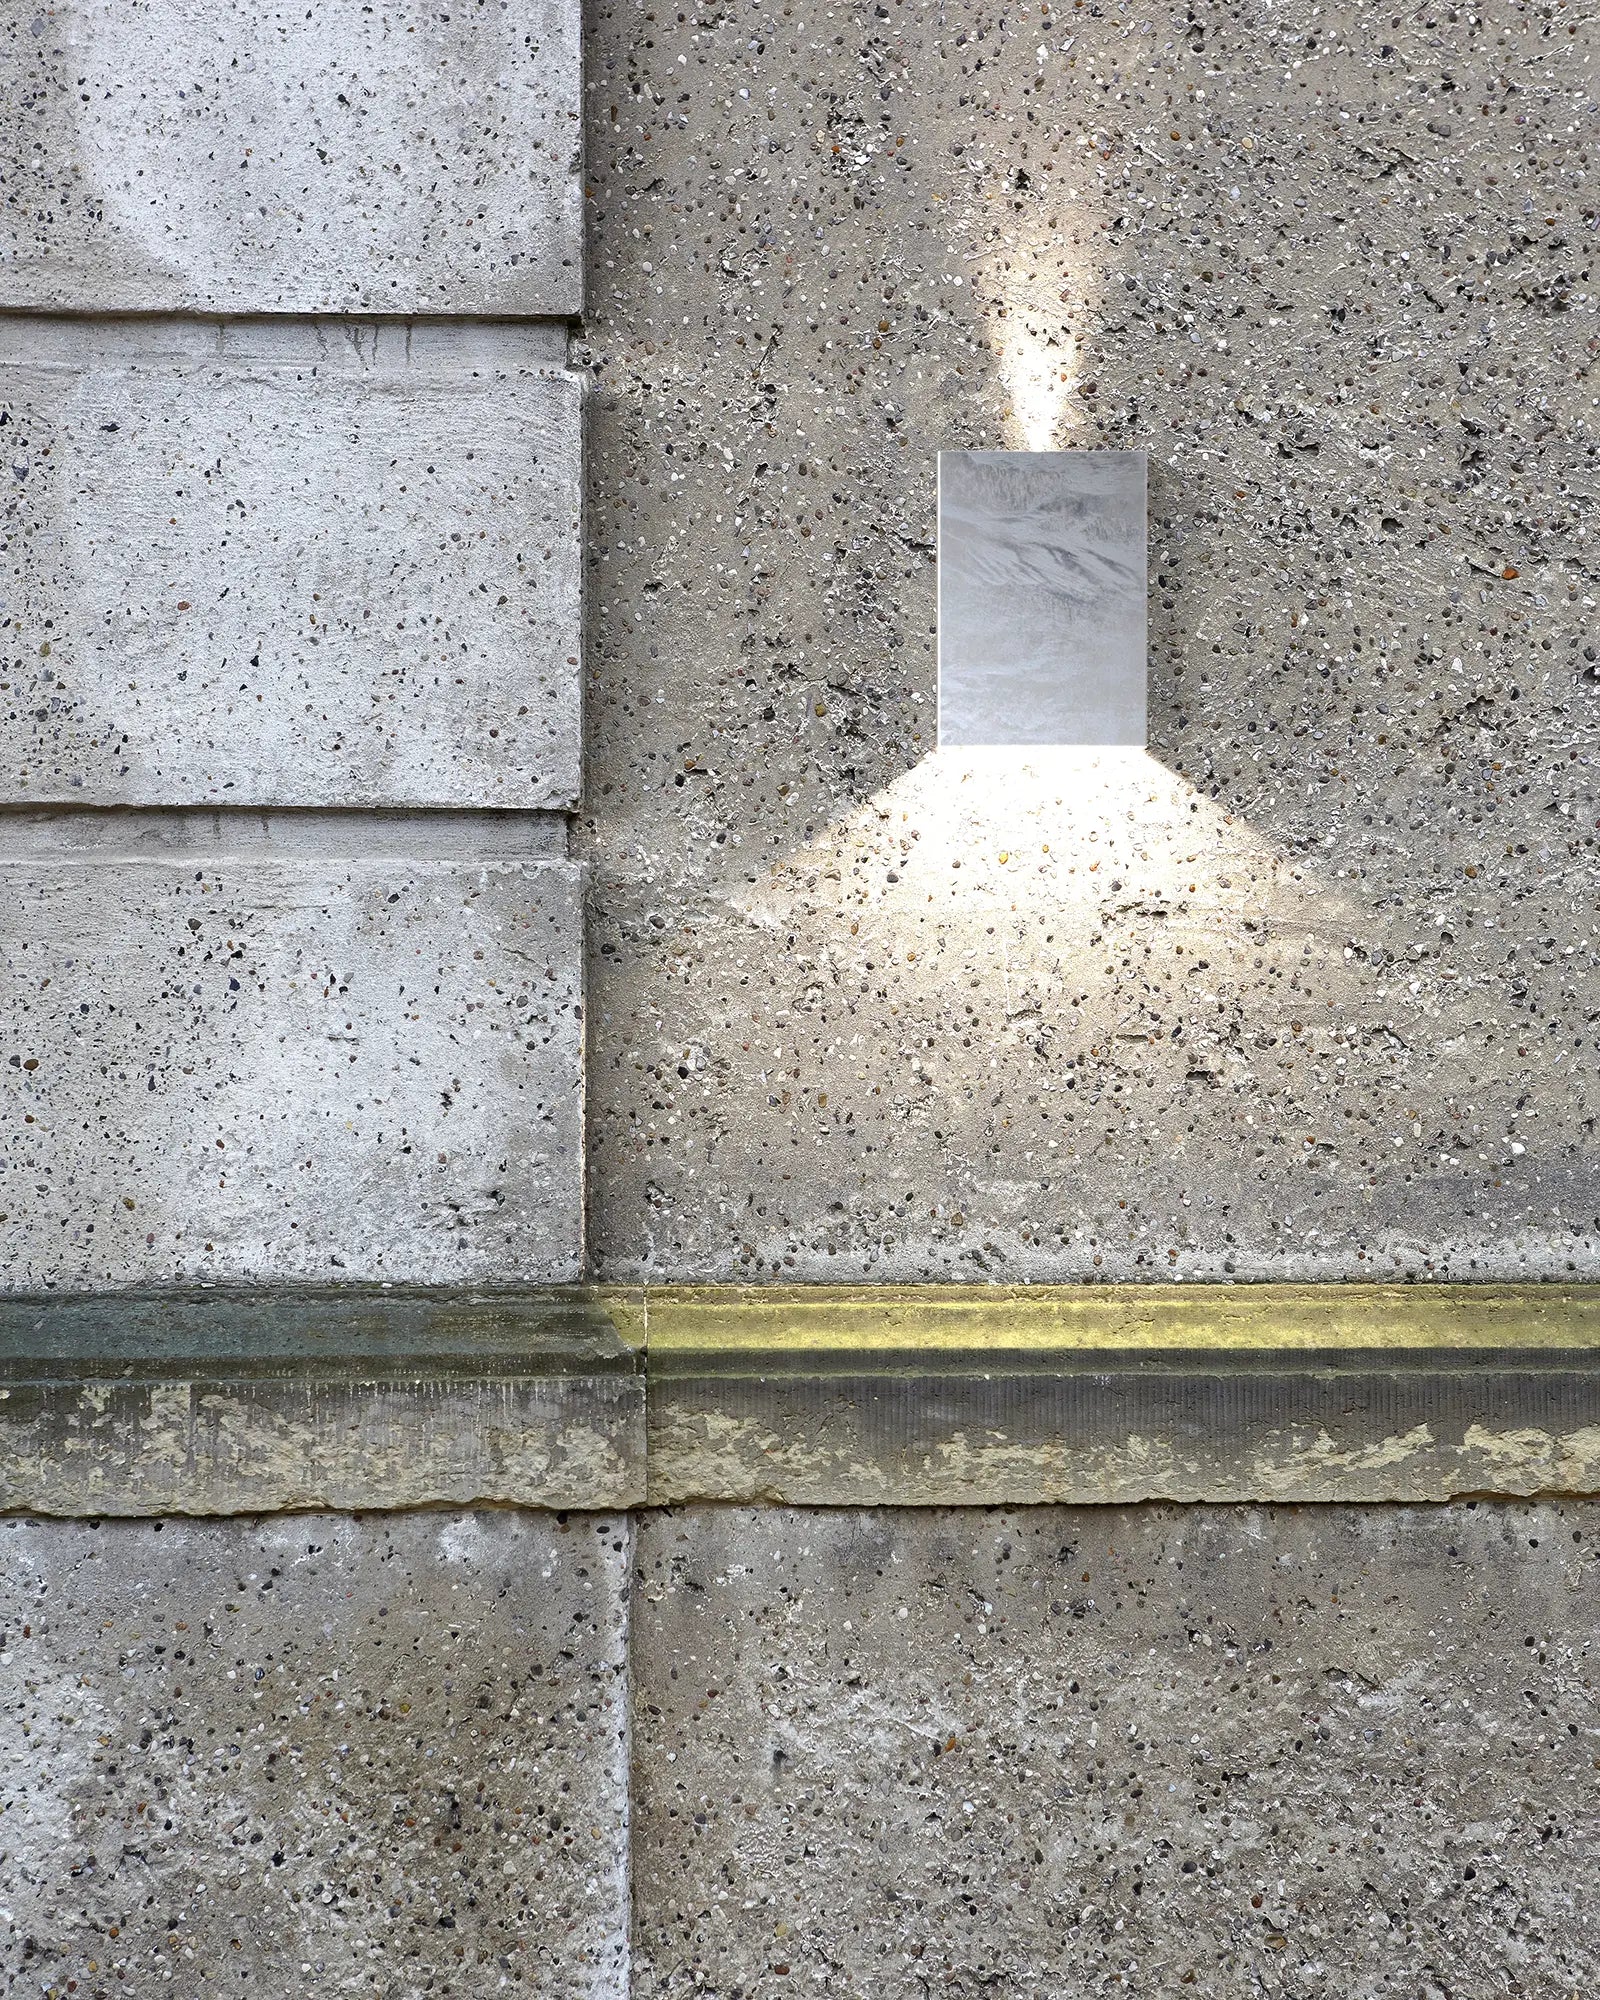 Fold 15 rectangular minimal outdoor Scandinavian light on a concrete wall